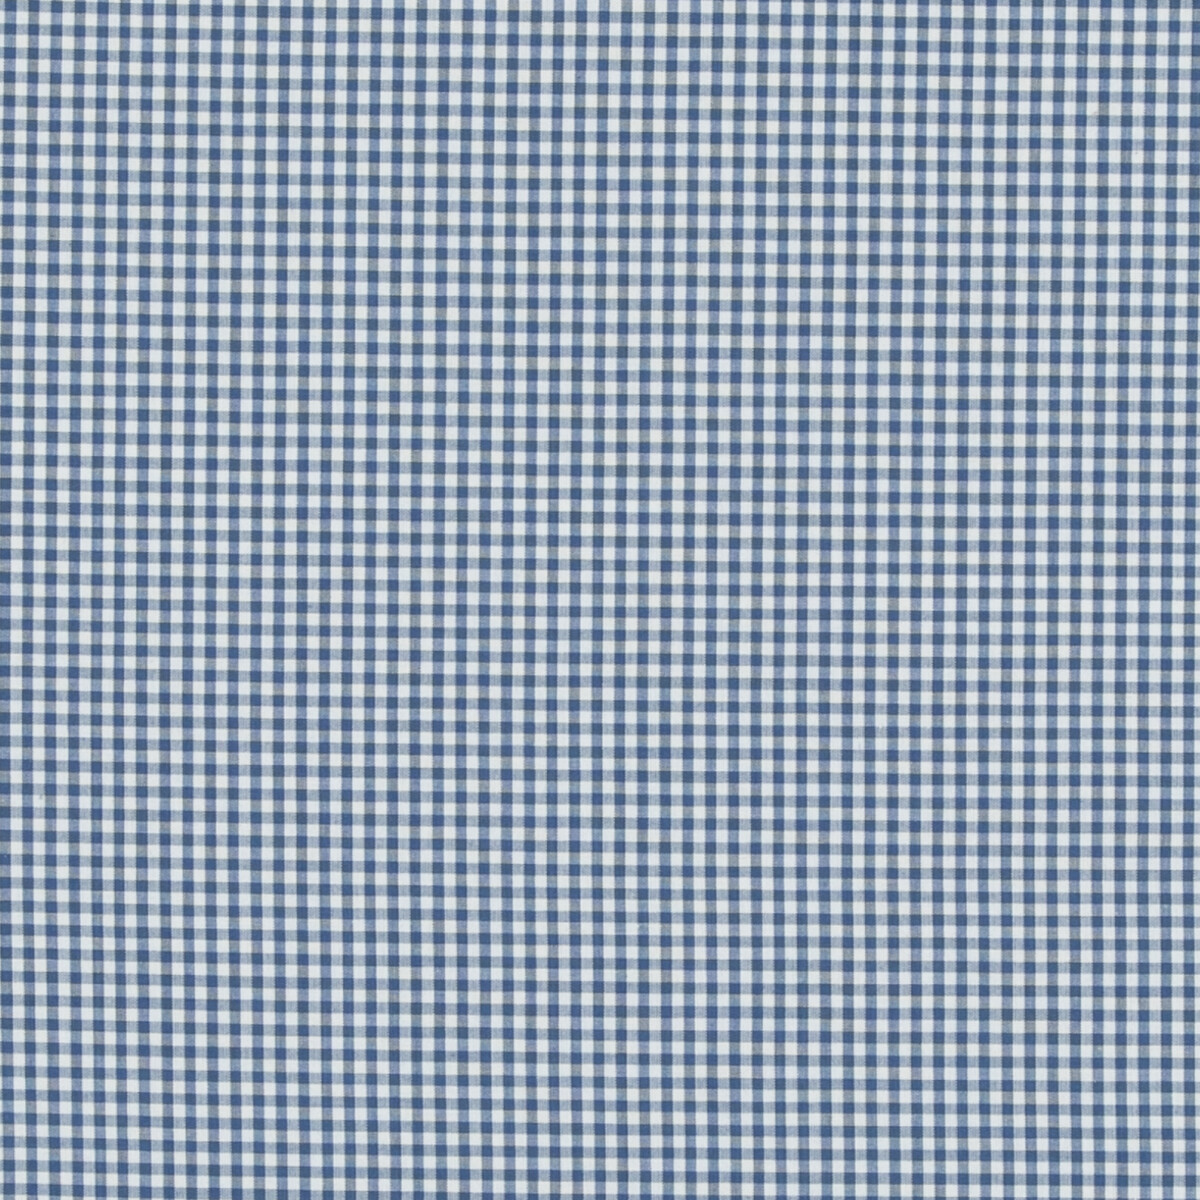 Baker Lifestyle Pf50506.660.0 Sherborne Gingham Multipurpose Fabric in Blue